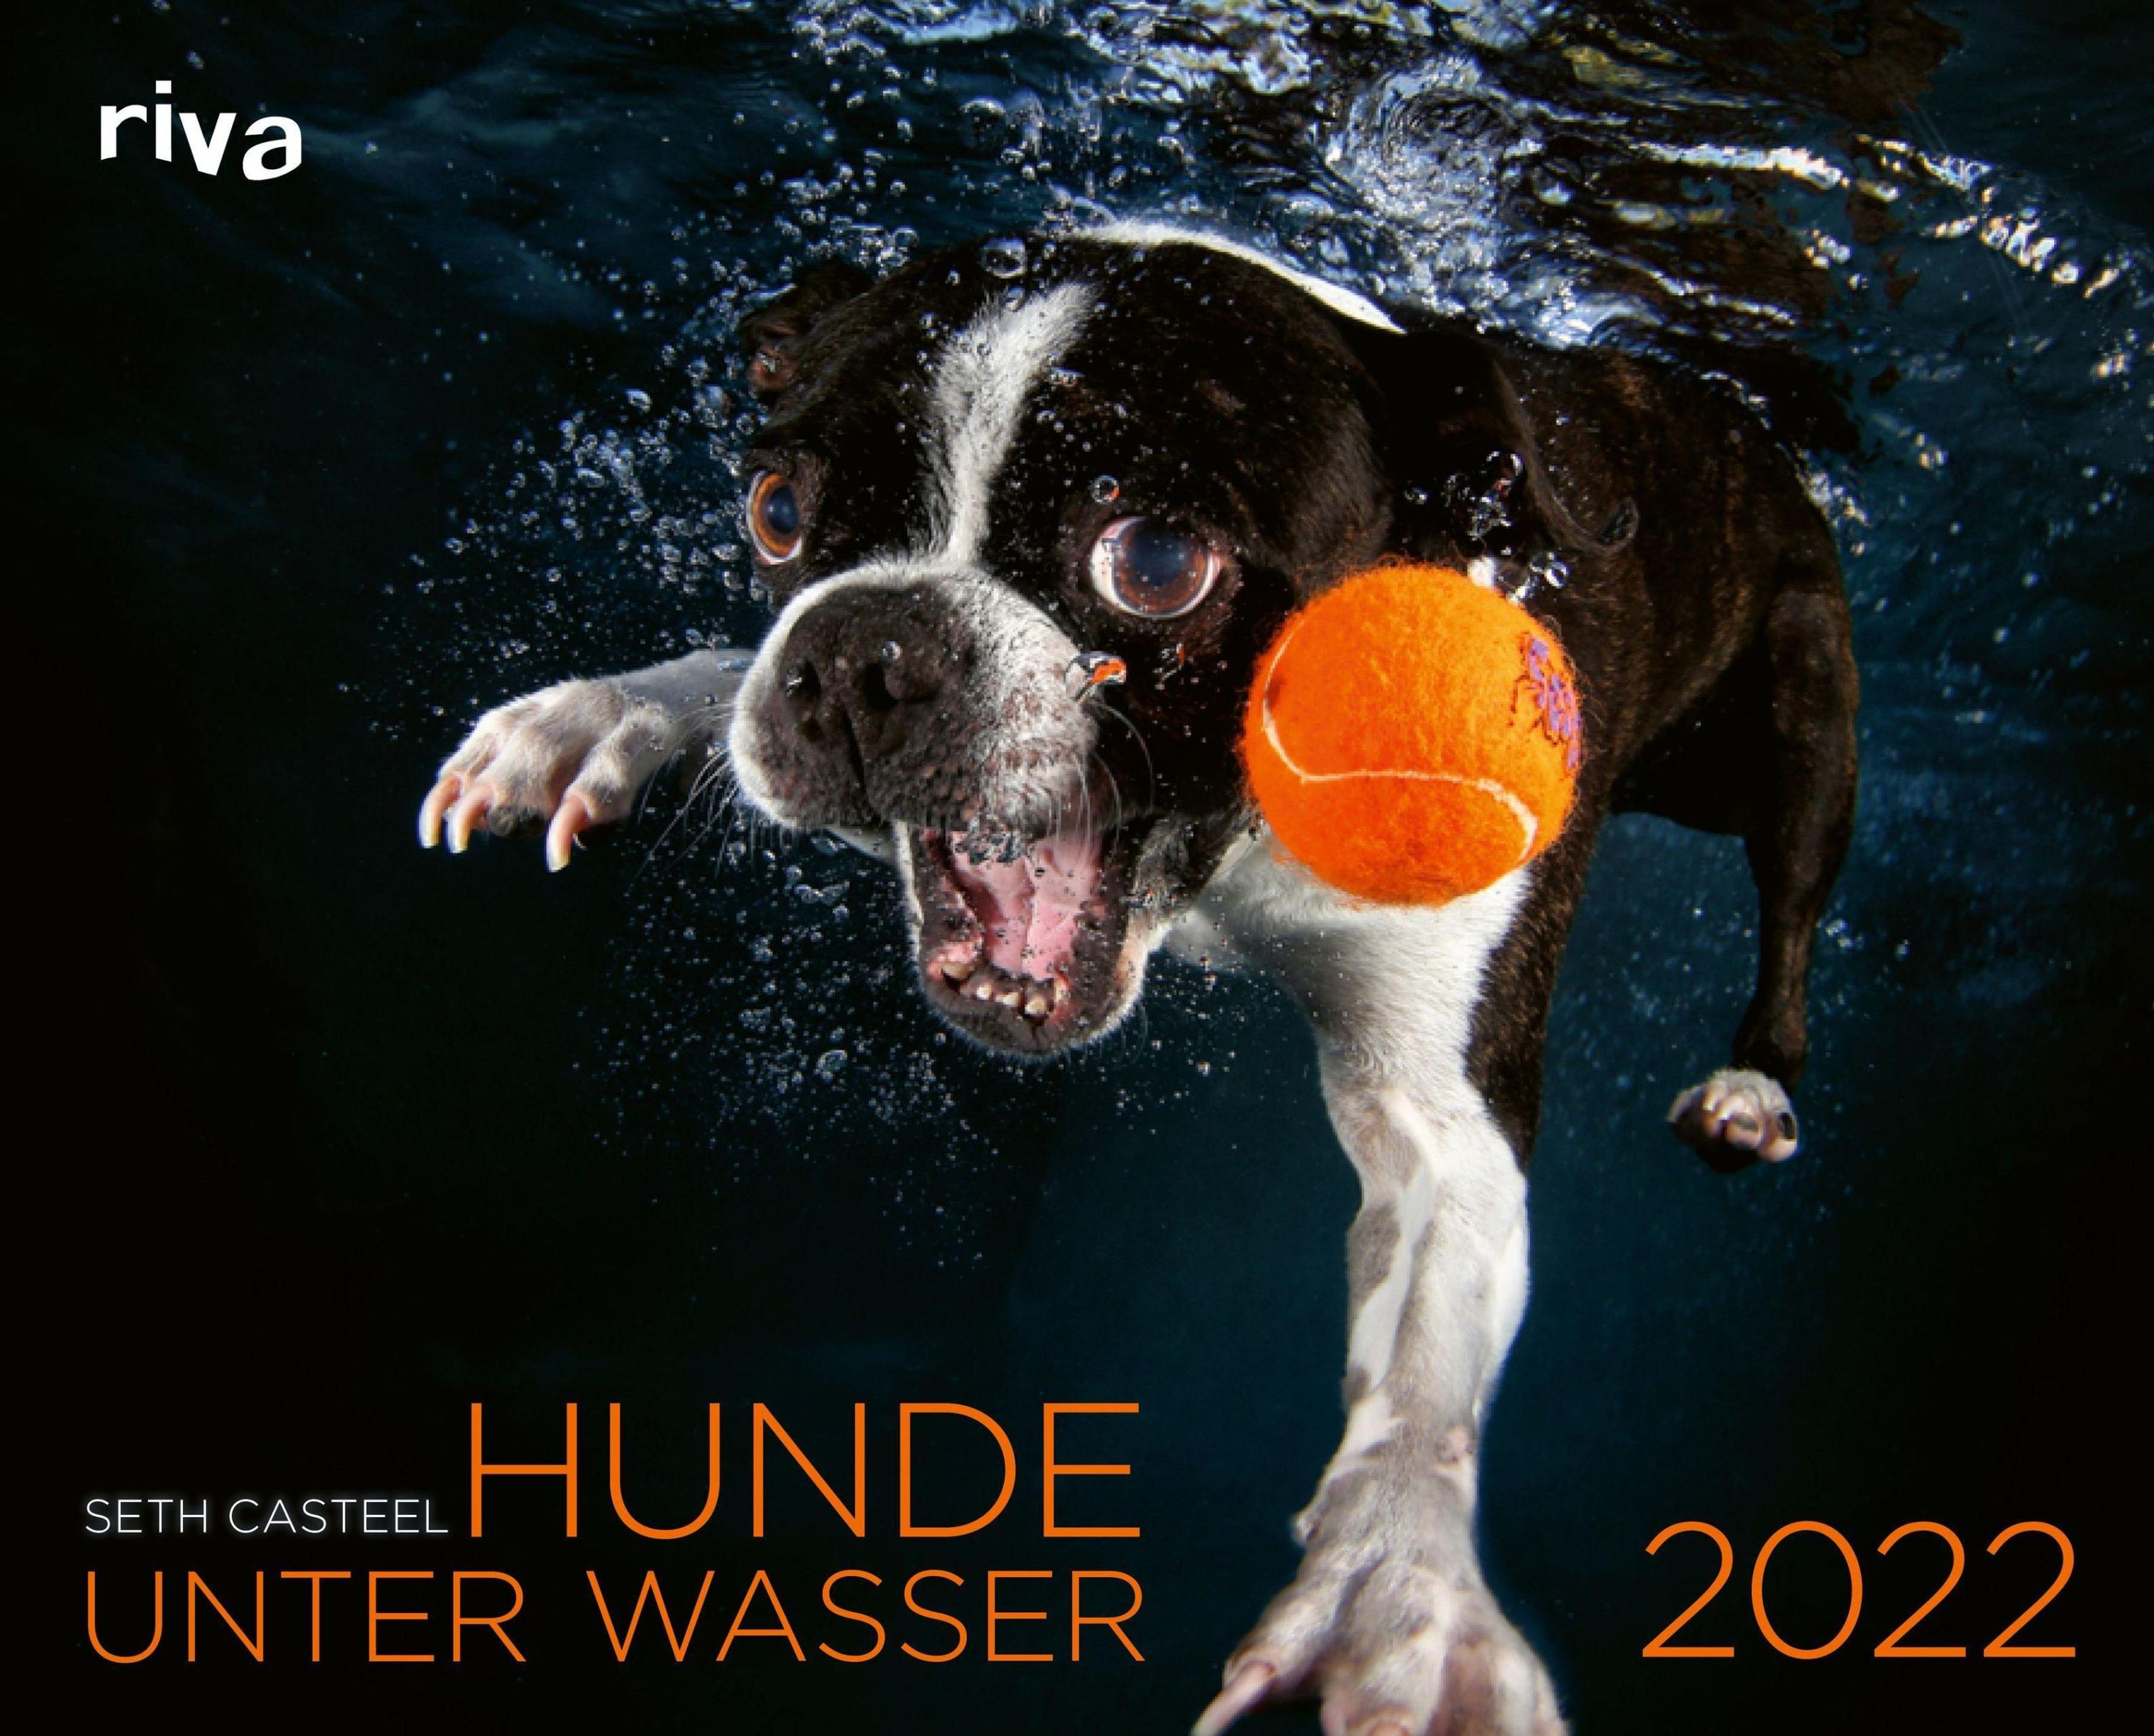 Hunde unter Wasser 2022 - Kalender bei Weltbild.de bestellen